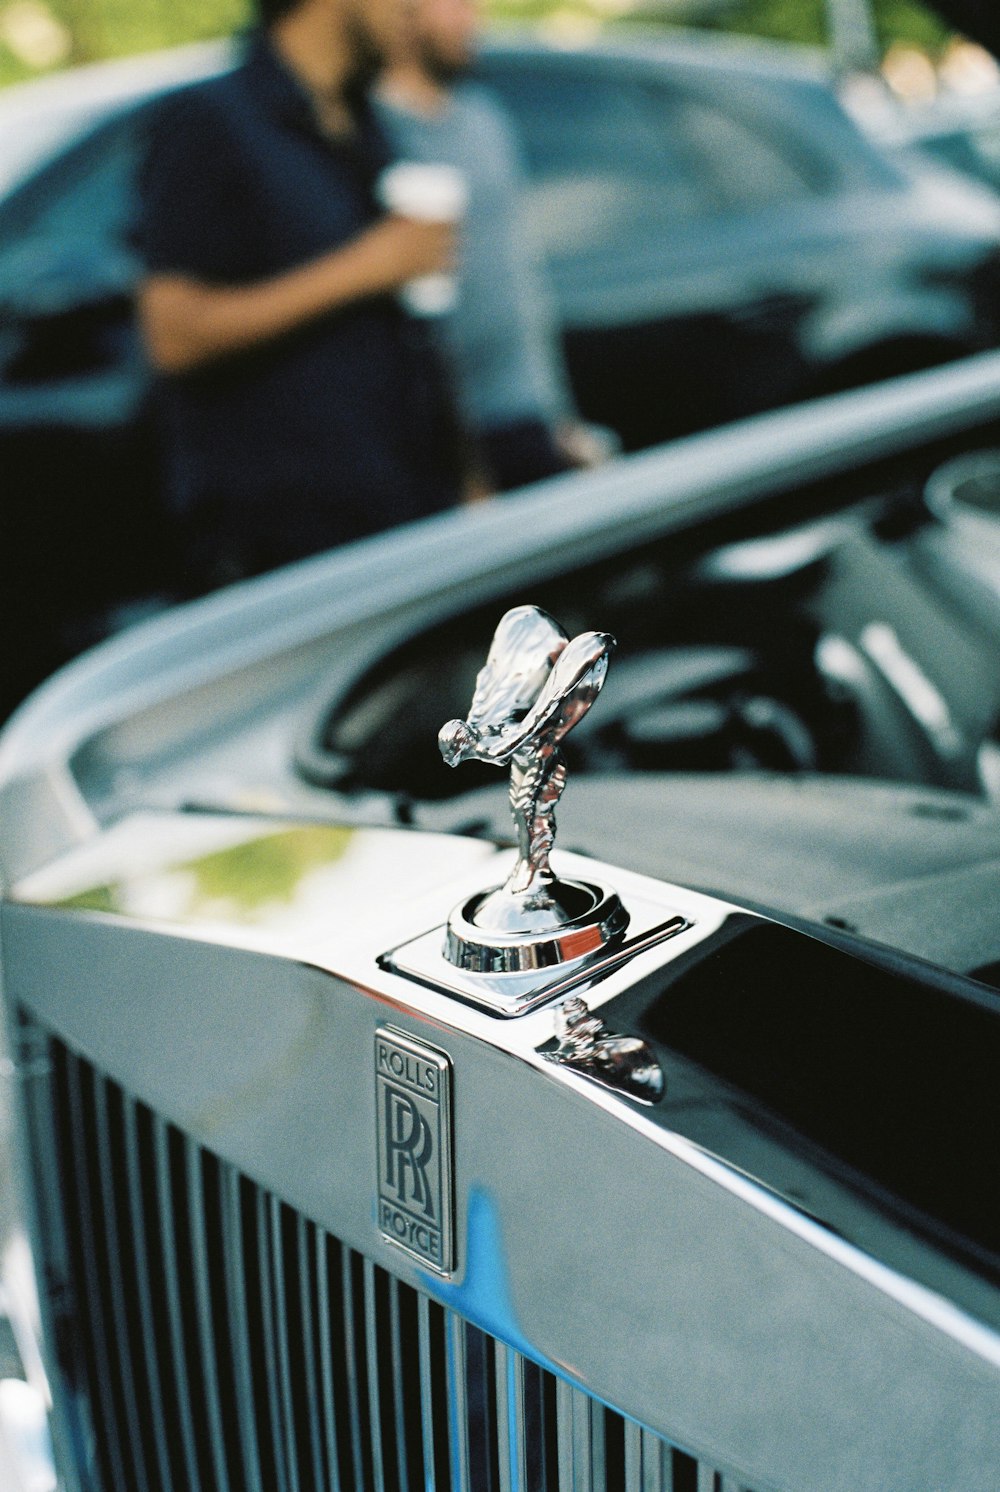 Rolls Royce emblem macro photography